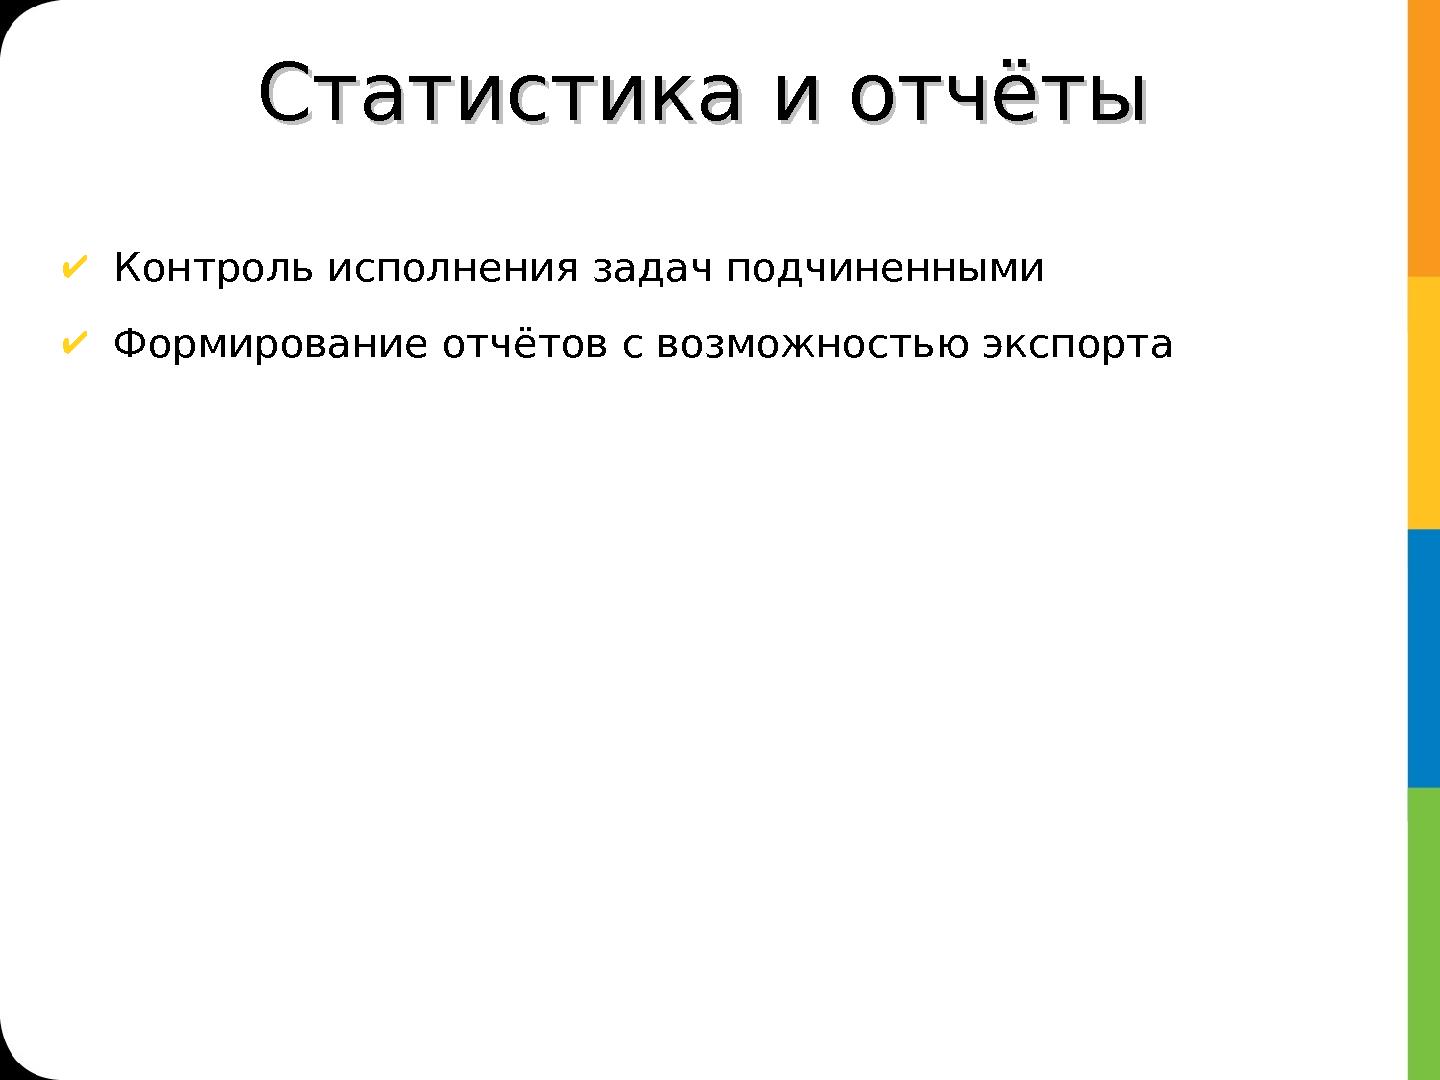 Файл:Примеры интеграции Alfresco (Алексей Ермаков, ROSS-2013).pdf